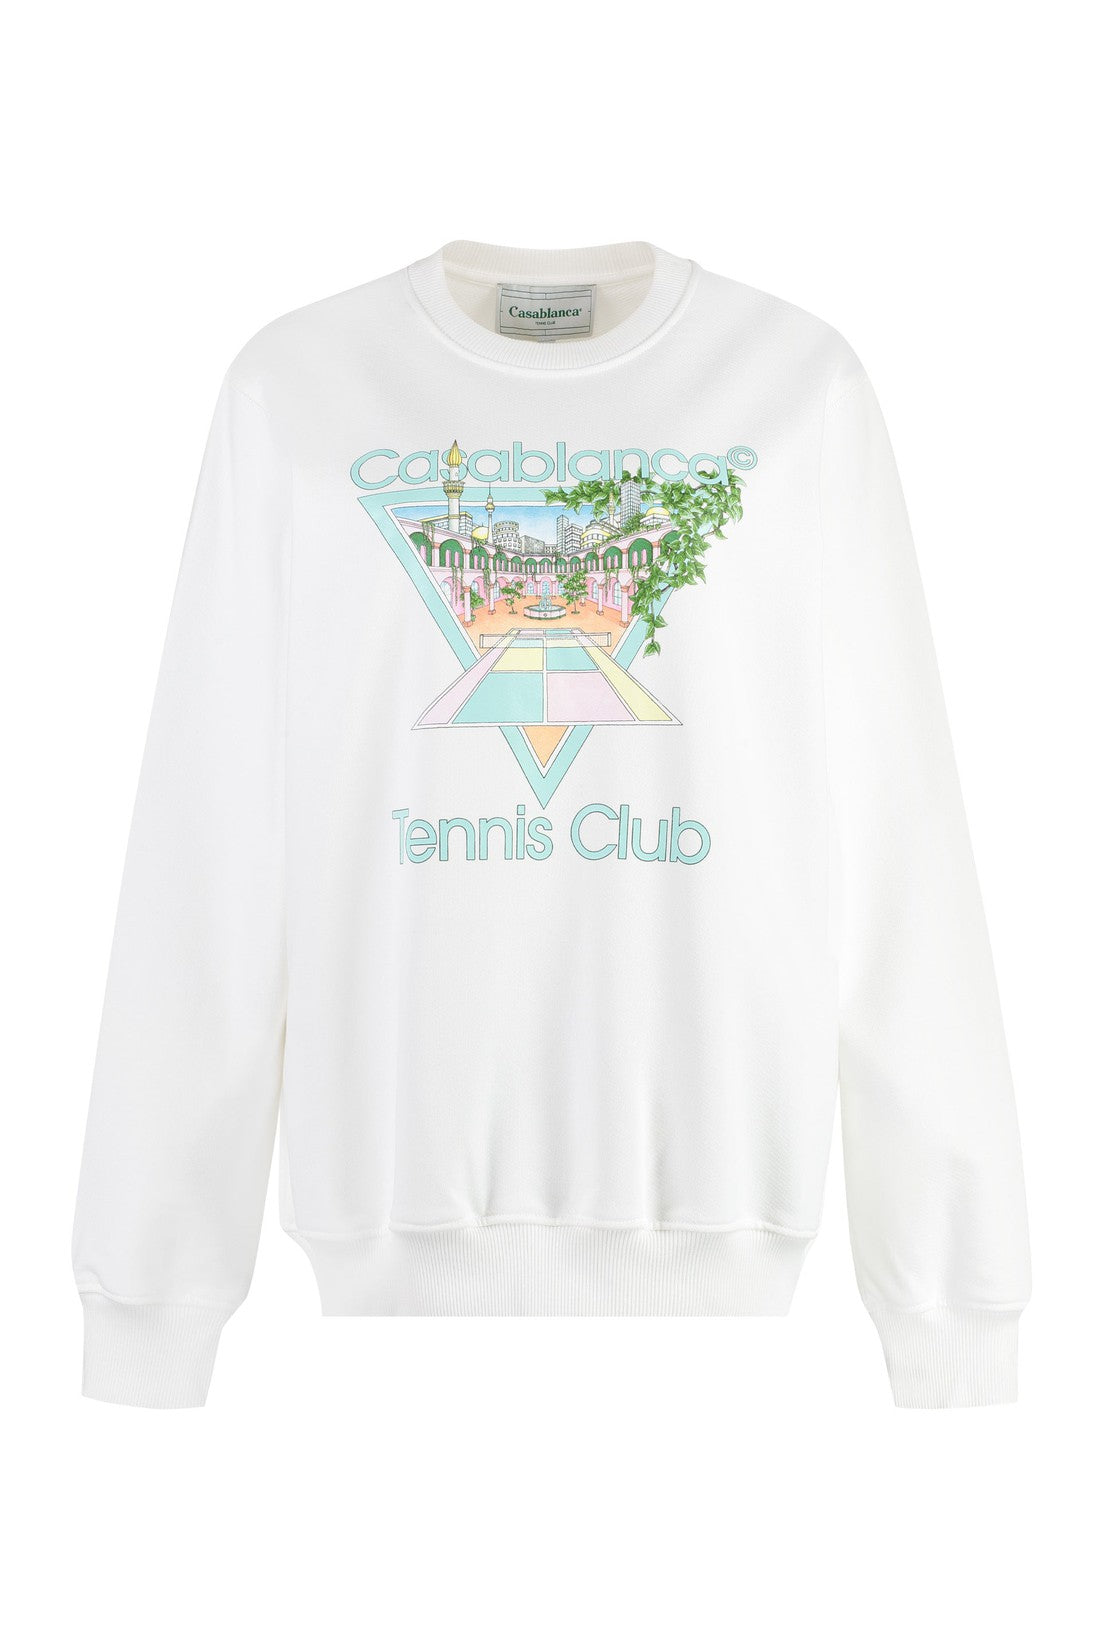 Casablanca-OUTLET-SALE-Printed cotton sweatshirt-ARCHIVIST